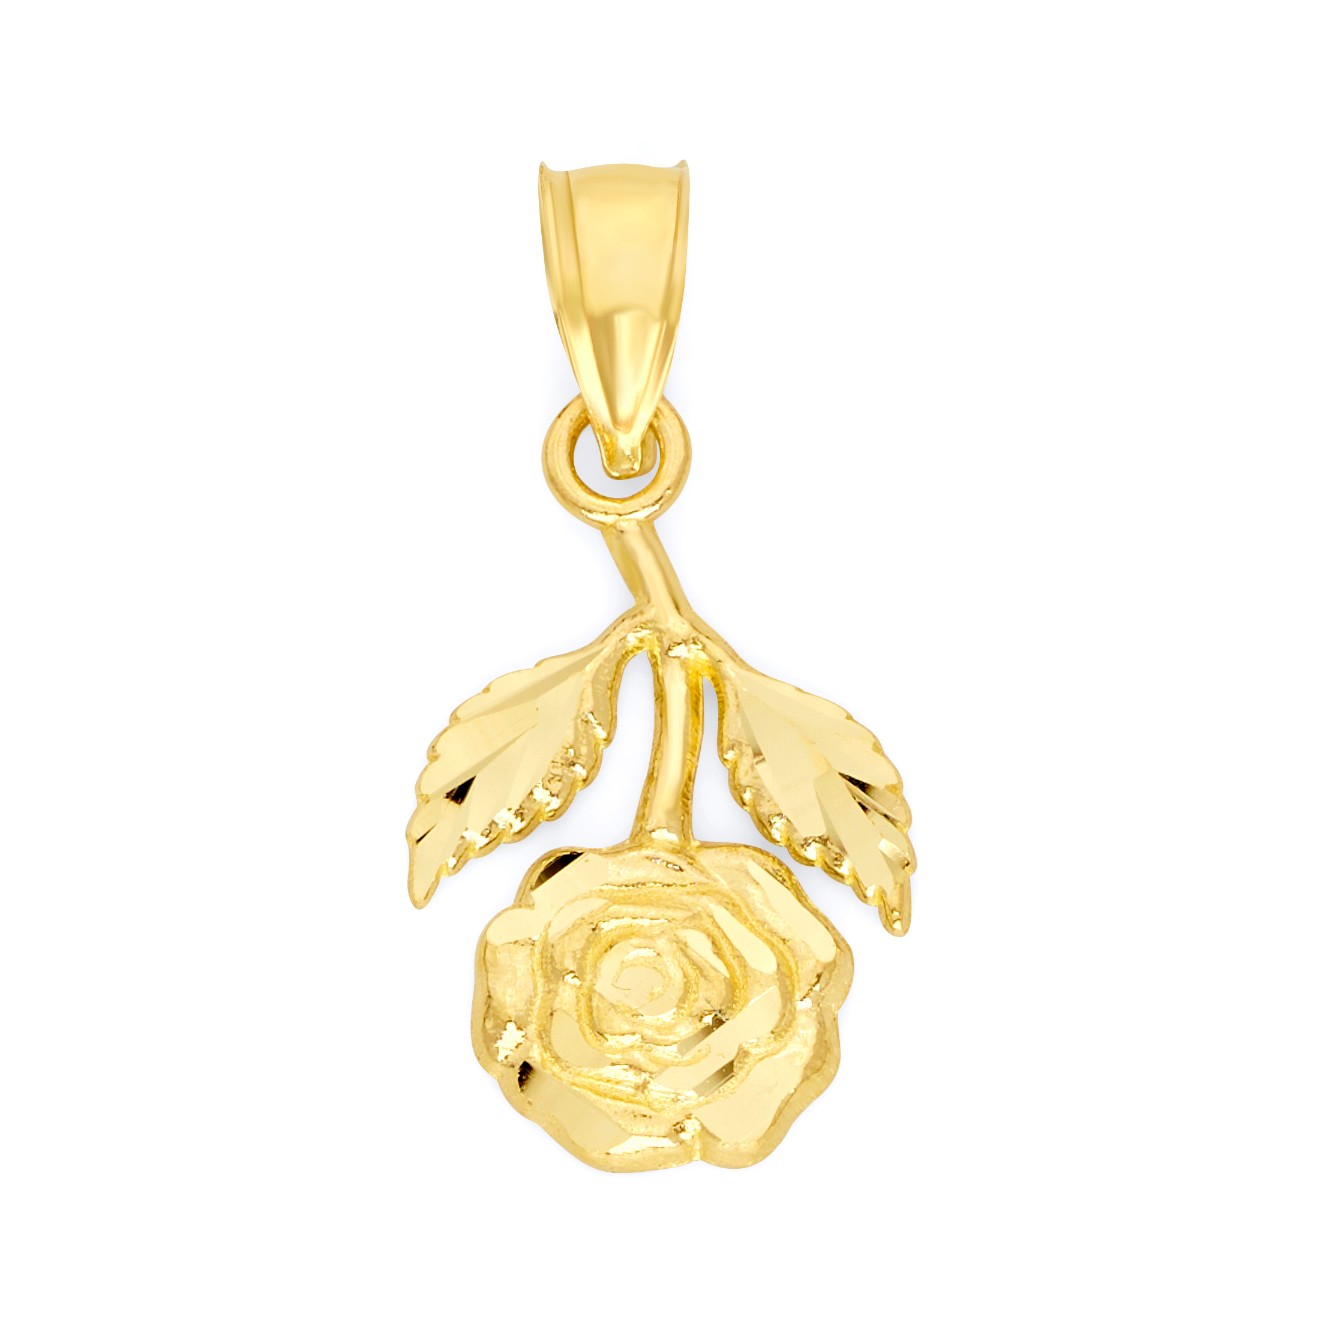 Solid Gold Hanging Rose Pendant - 10k or 14k